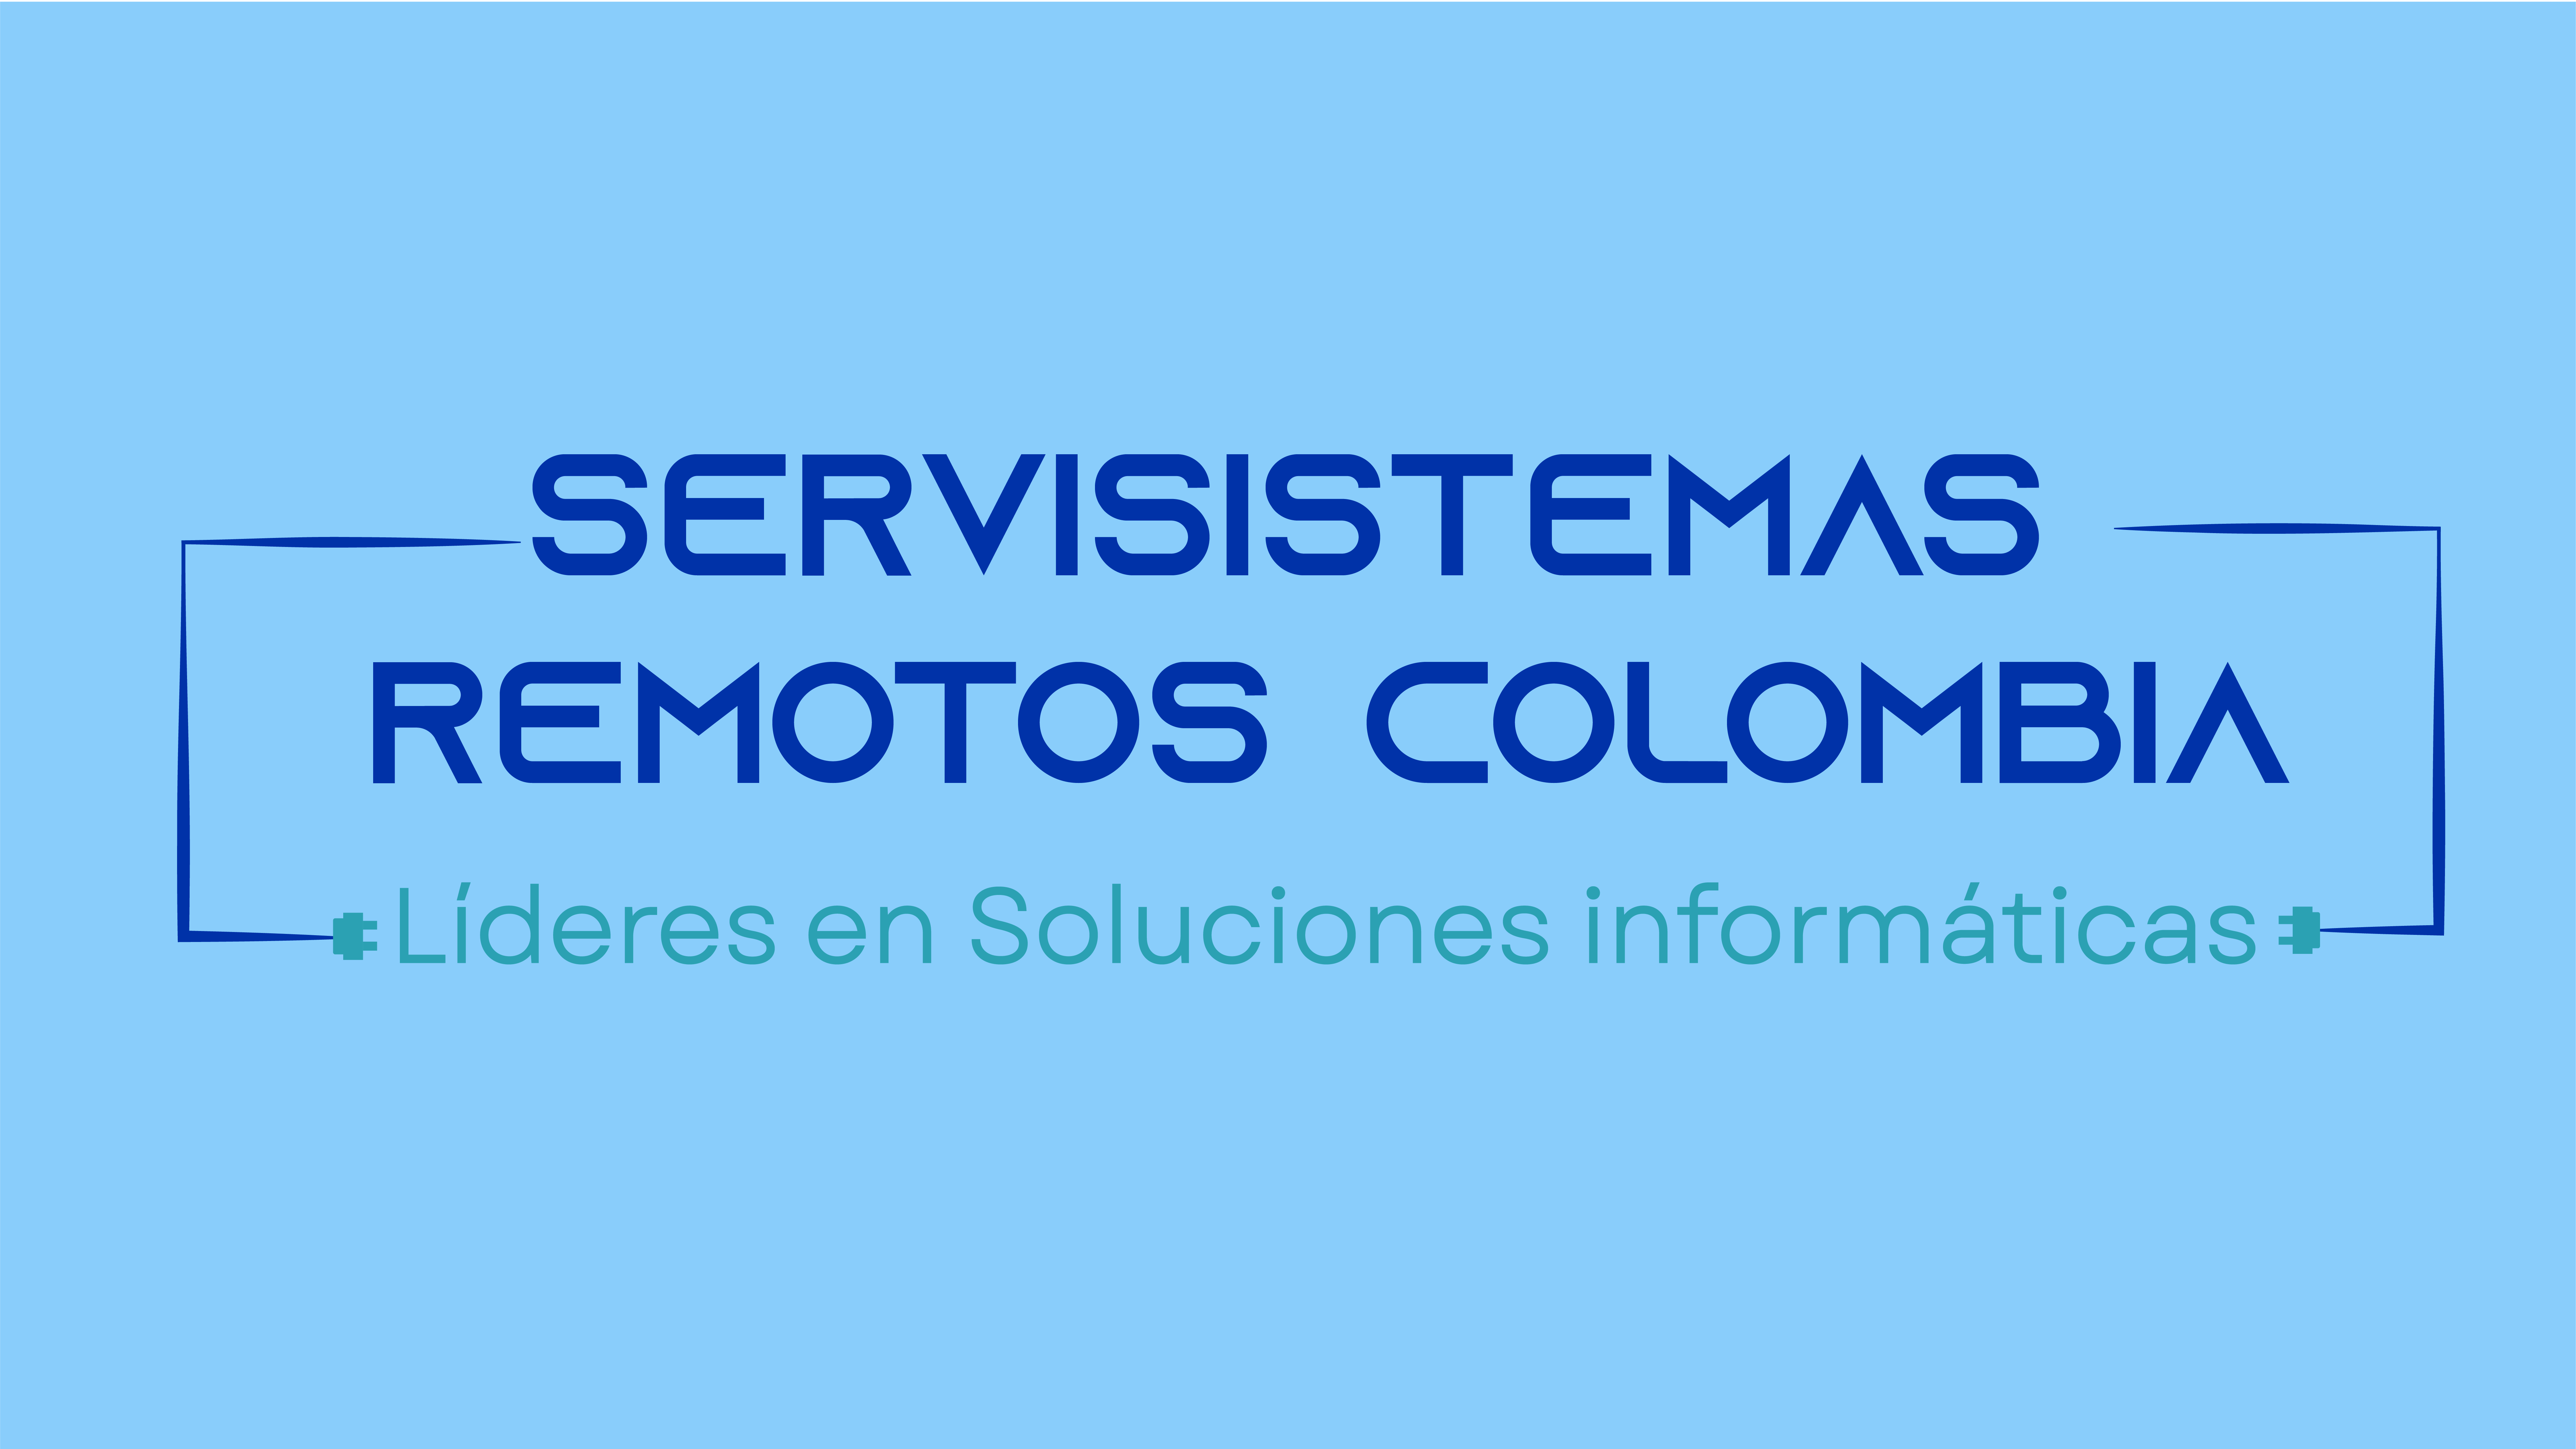 SERVISIS TEMAS
REMOTOS COLOMBIA